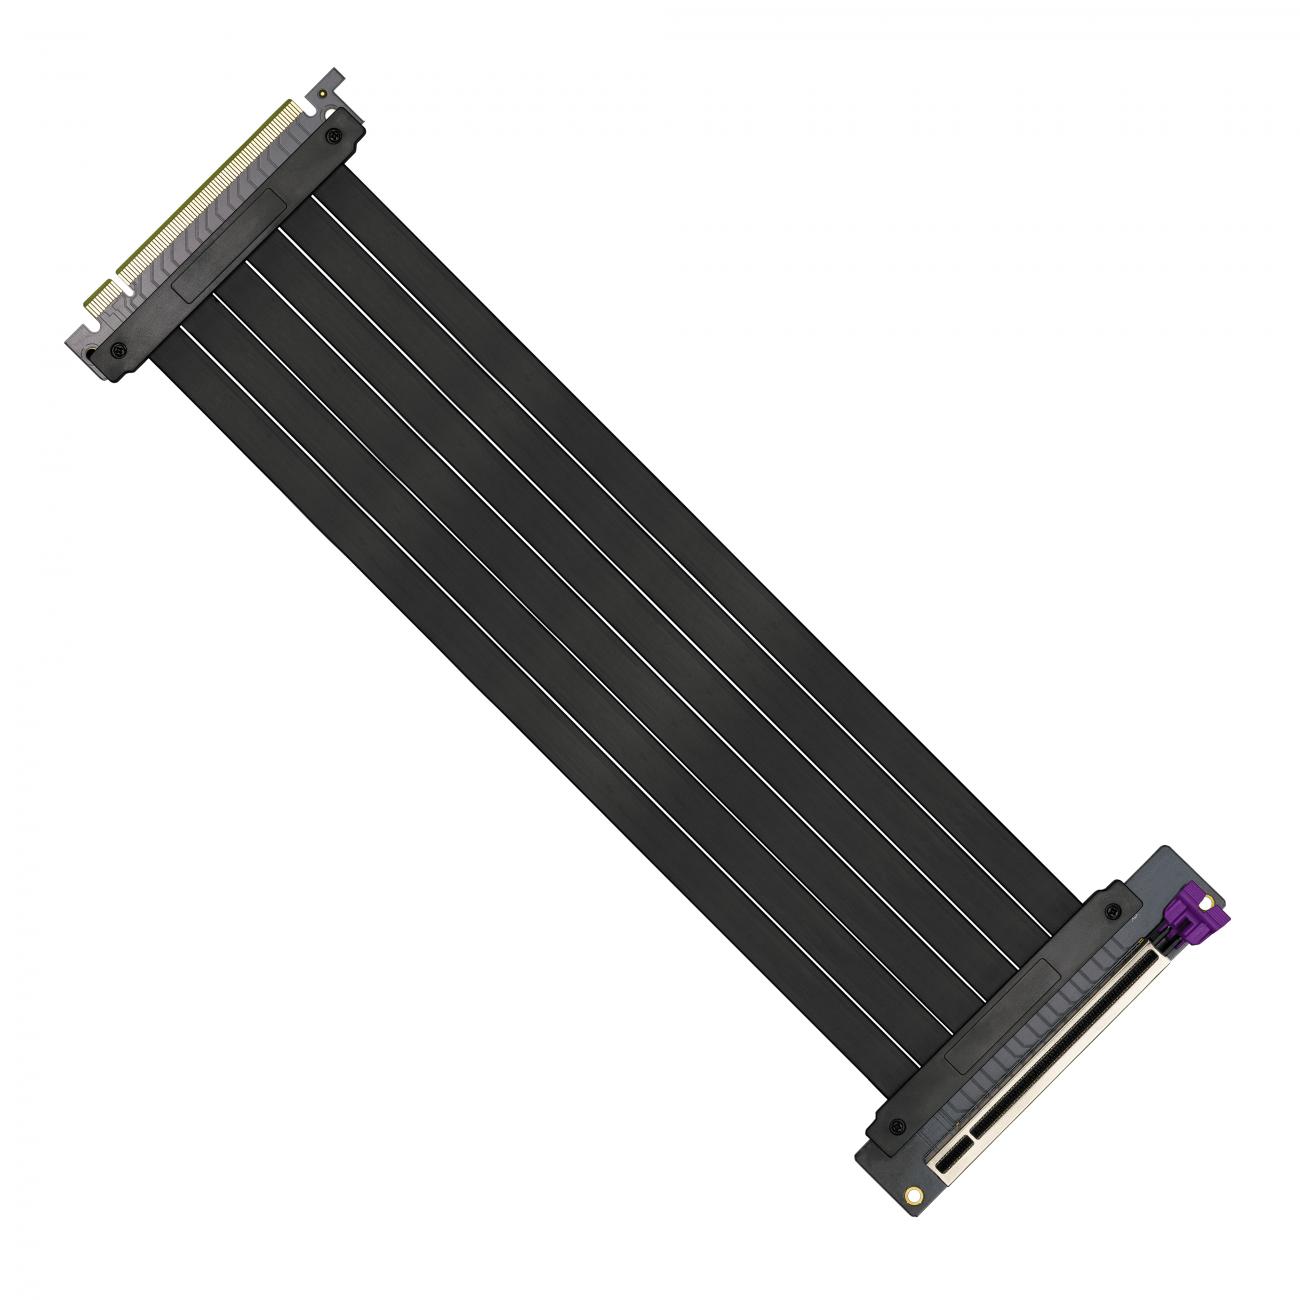 MasterAccessory - Riser Cable PCI-E 3.0 x16 (300mm)